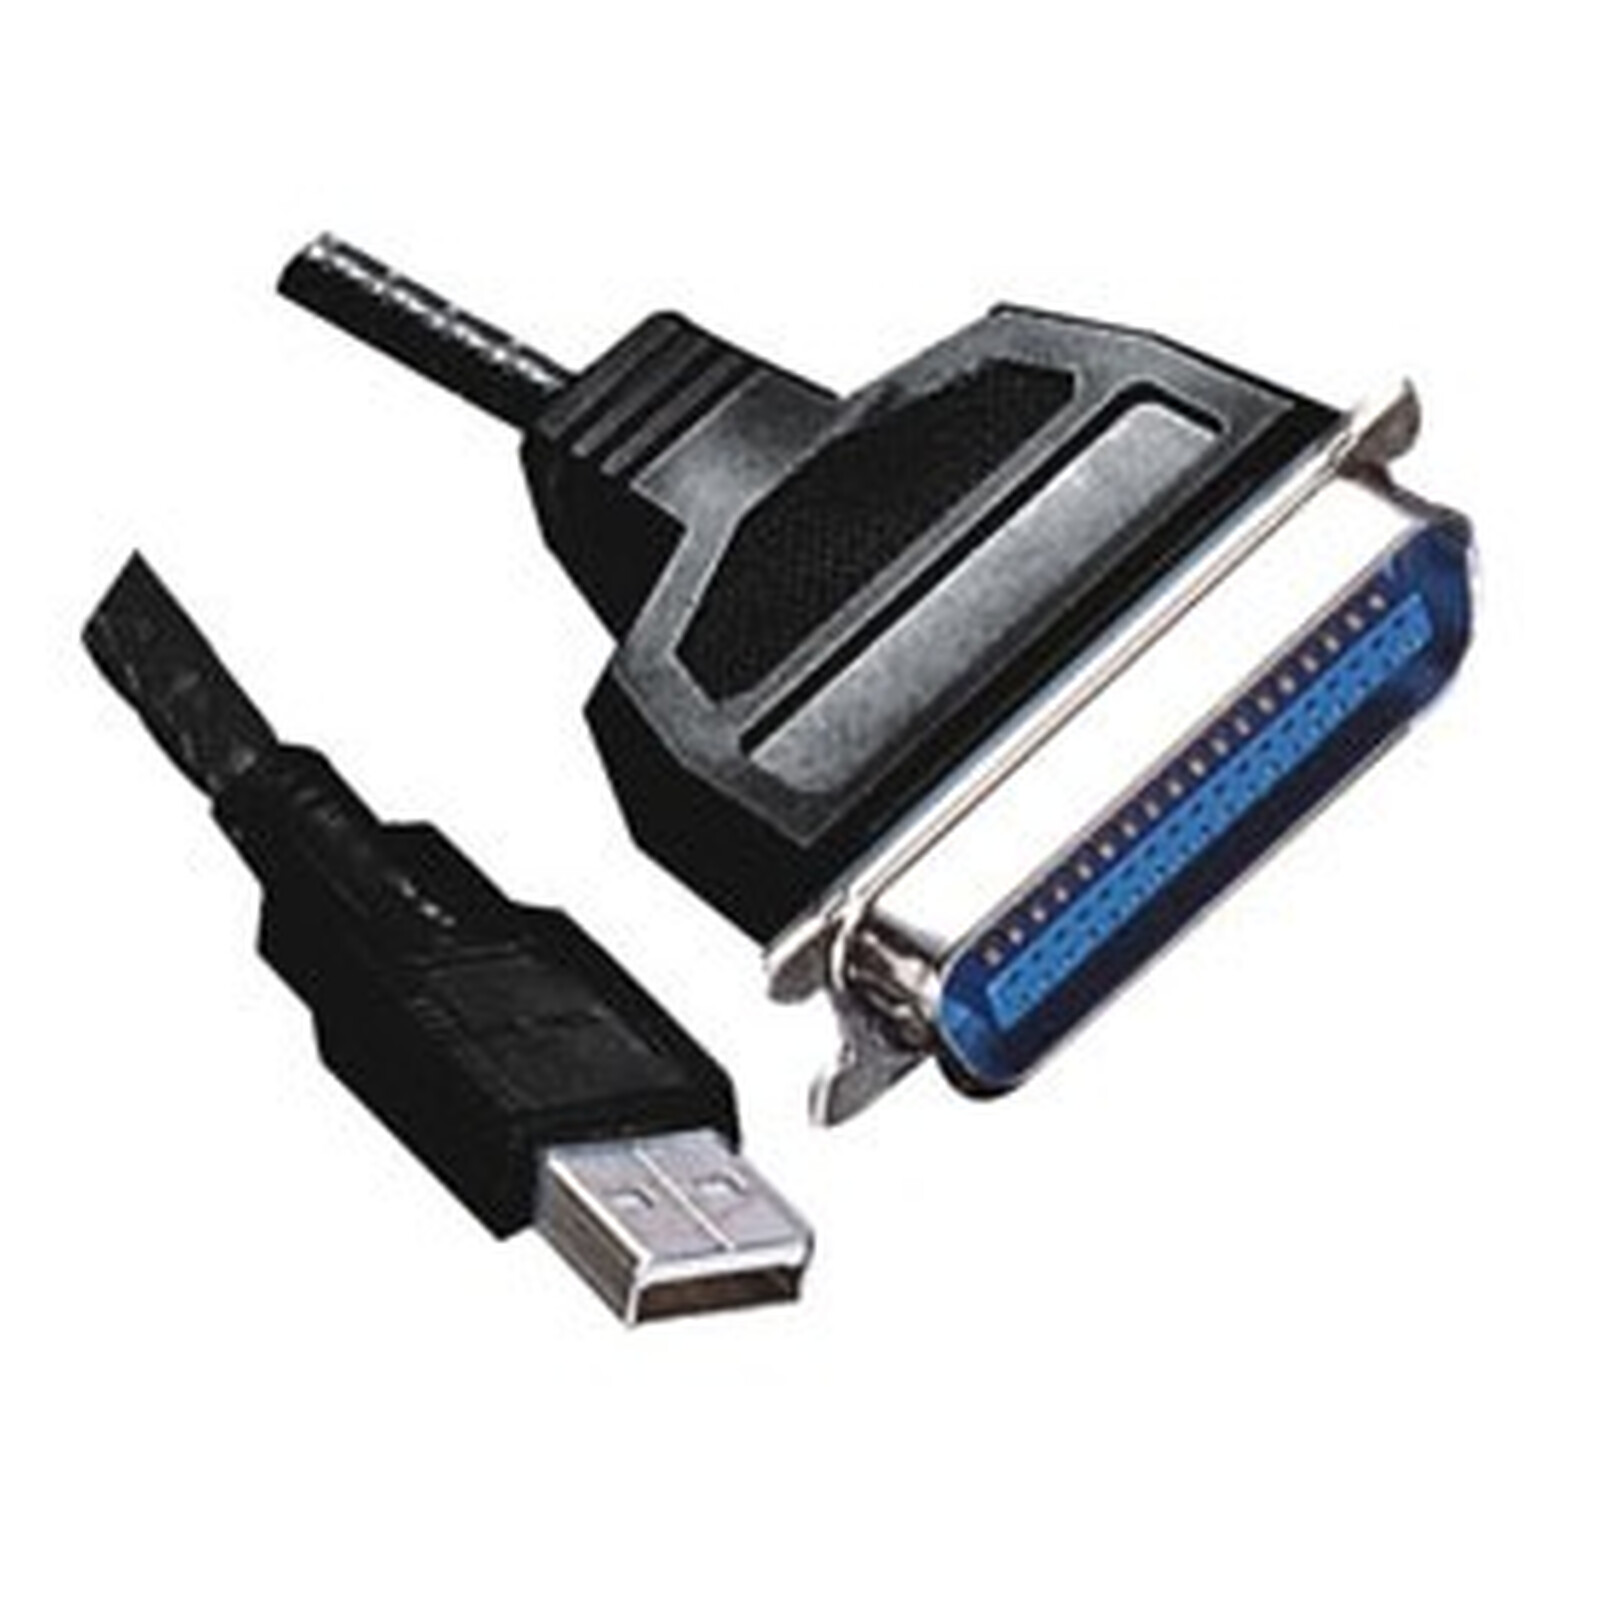 Câble USB pour imprimante Parallèle (Centronics C36) - USB - Garantie 3 ans  LDLC